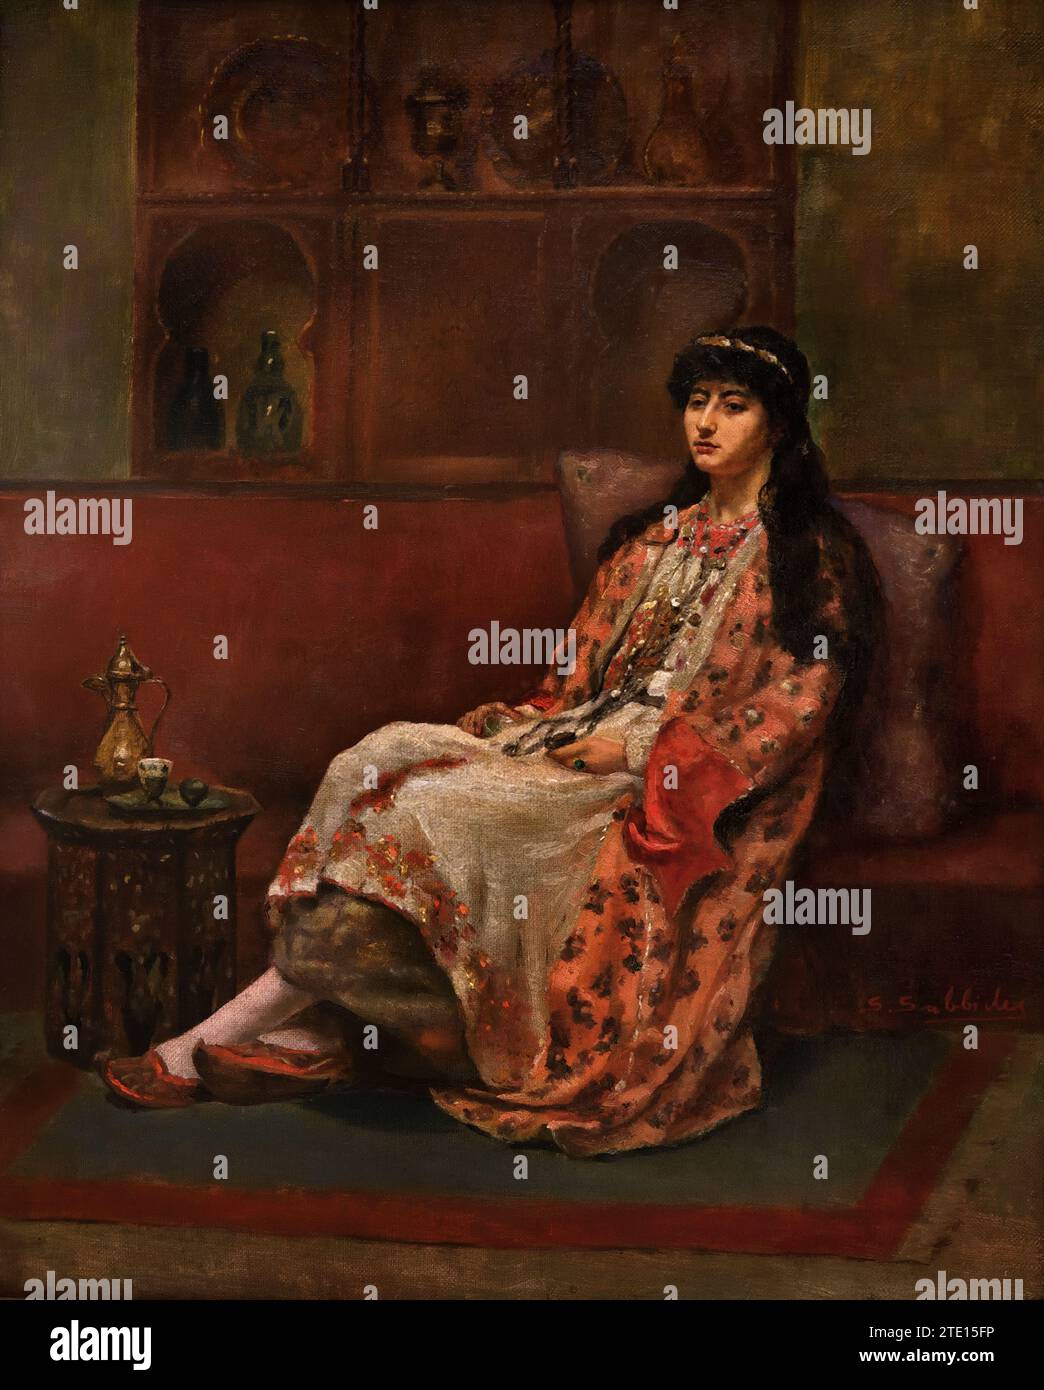 Savvidis Symeon (1859 - 1927) Femme turque à l'heure du café, peinture 19RBR-20e siècle, Galerie nationale, Athènes, Grèce. Orientaliste, orientalisme Banque D'Images